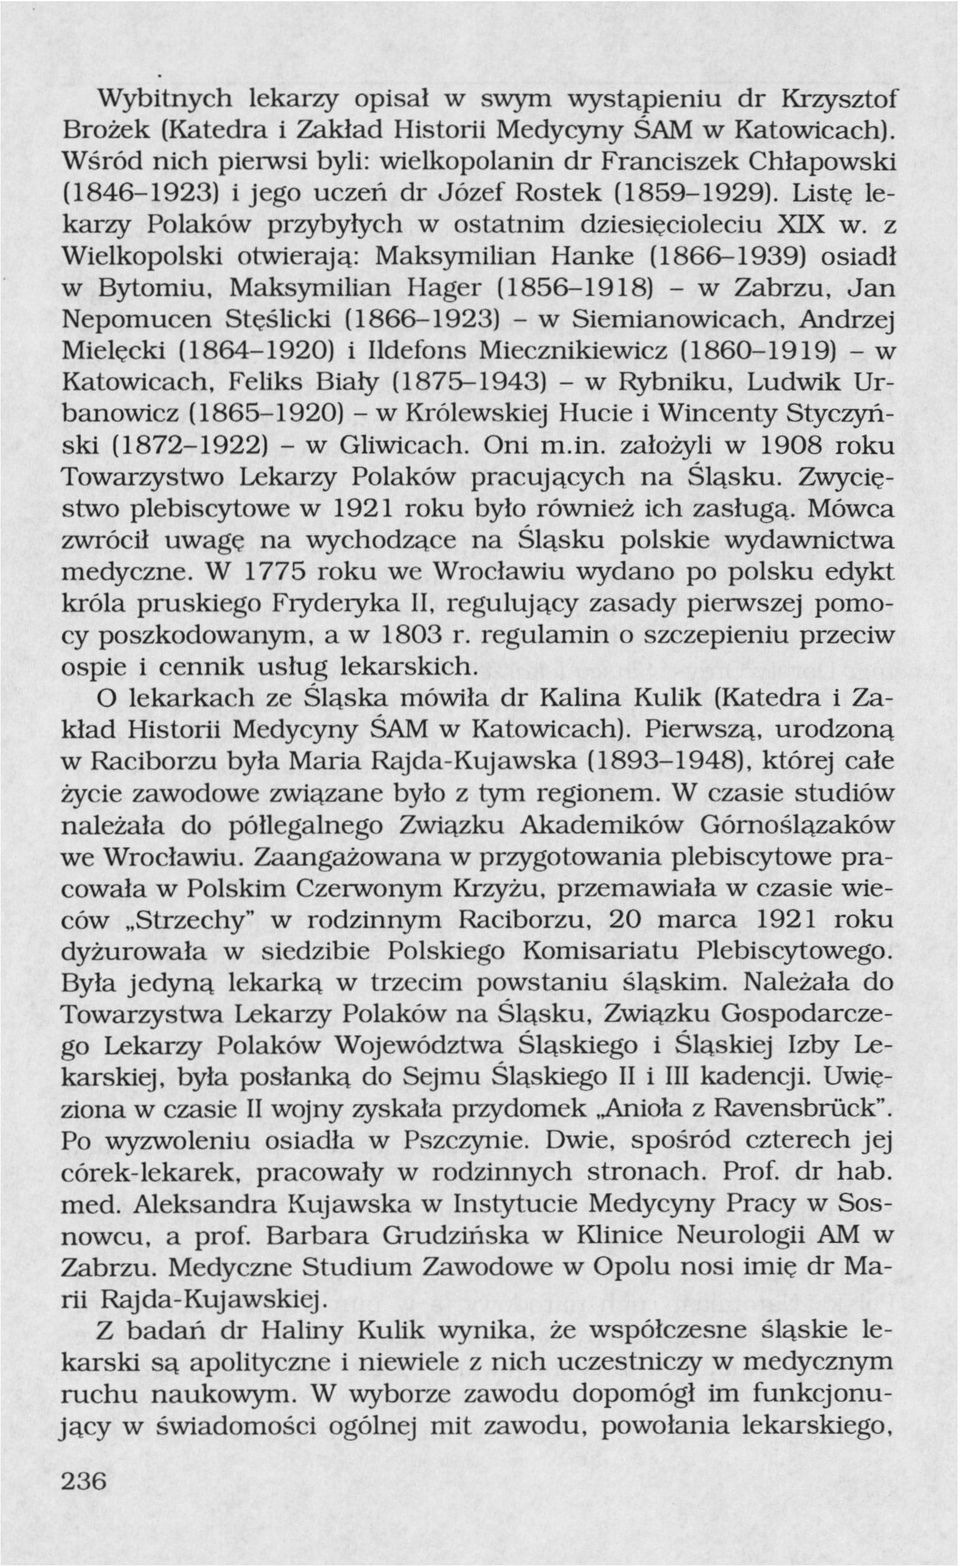 z Wielkopolski otwierają: Maksymilian Hanke (1866-1939) osiadł w Bytomiu, Maksymilian Hager (1856-1918) - w Zabrzu, Jan Nepomucen Stęślicki (1866-1923) - w Siemianowicach, Andrzej Mielęcki